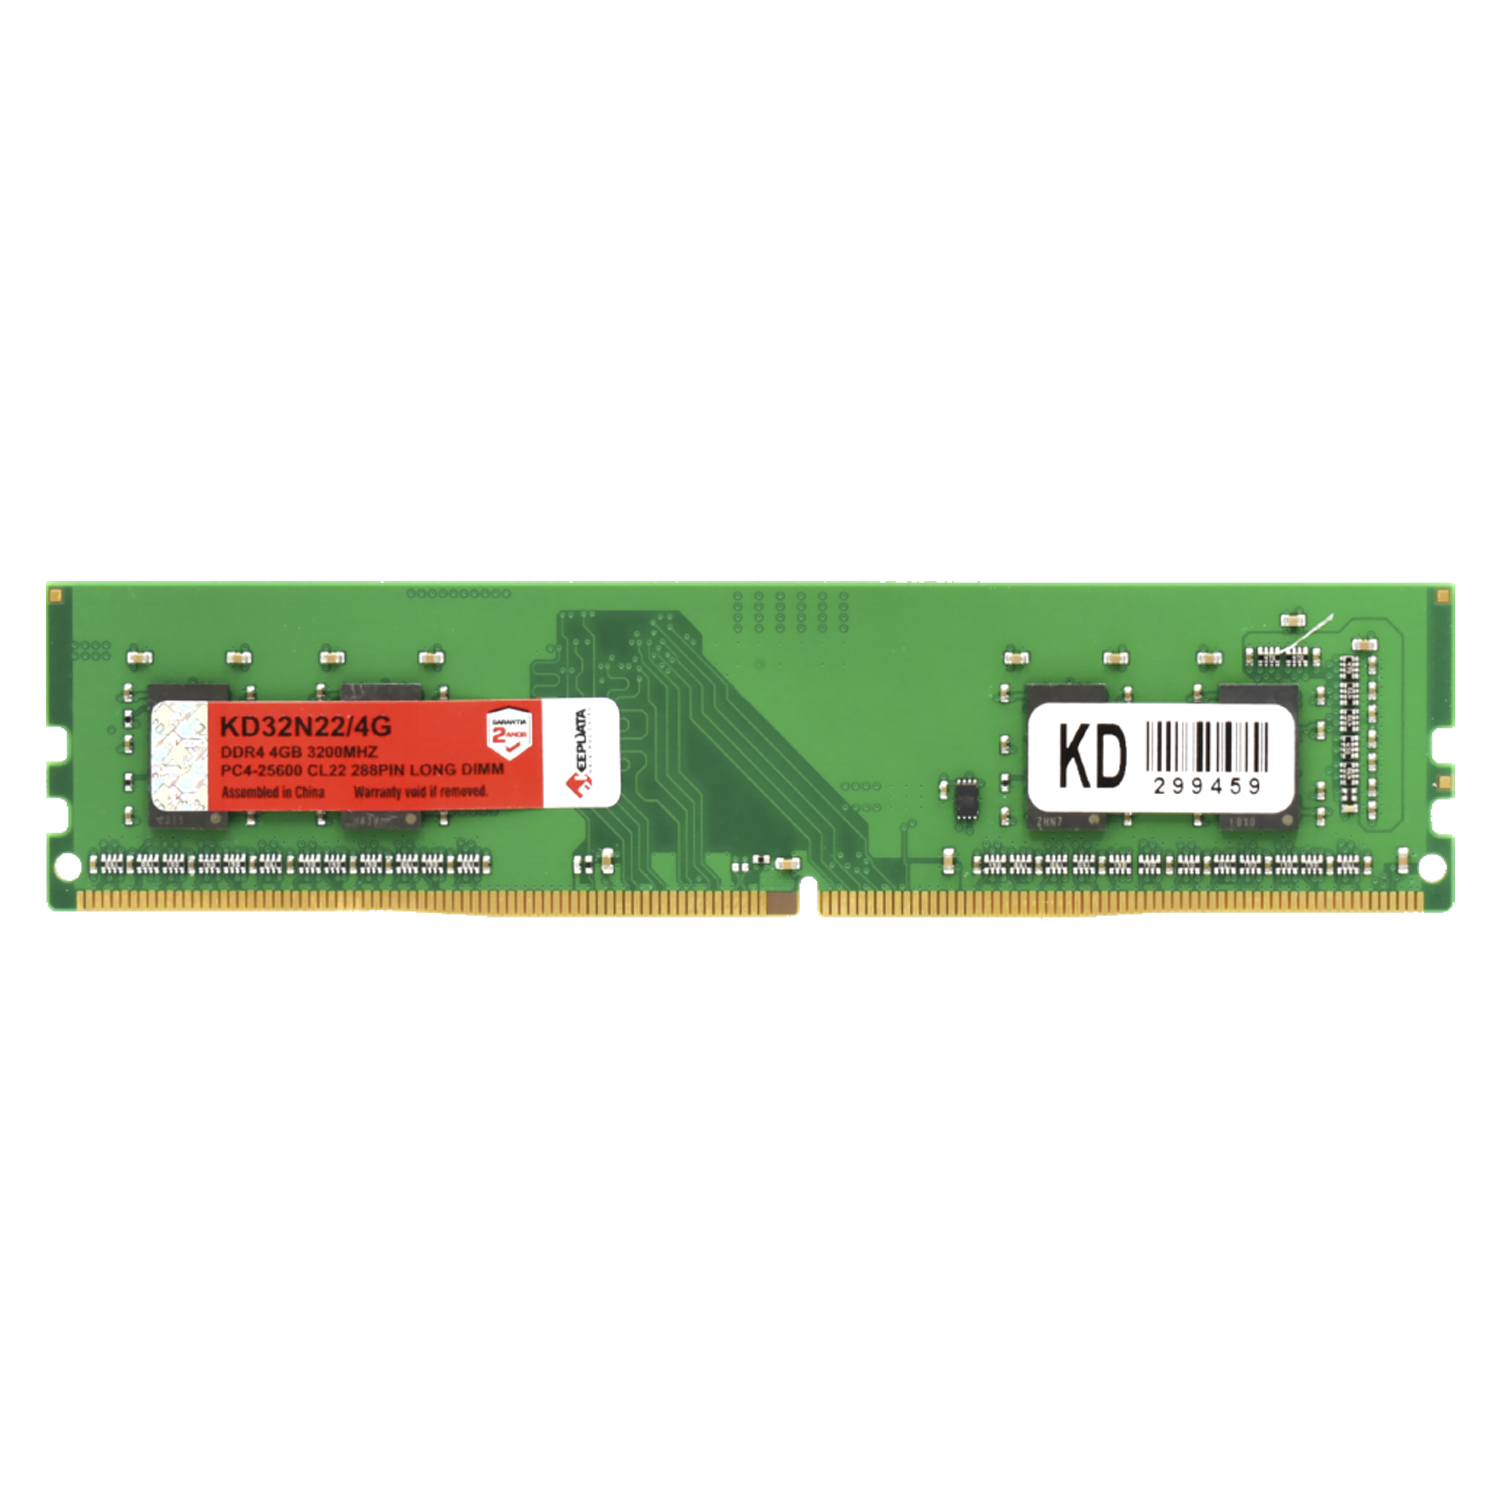 Memória Keepdata 4GB / DDR4 / 3200 / 1X4GB - (KD32N22/4G)